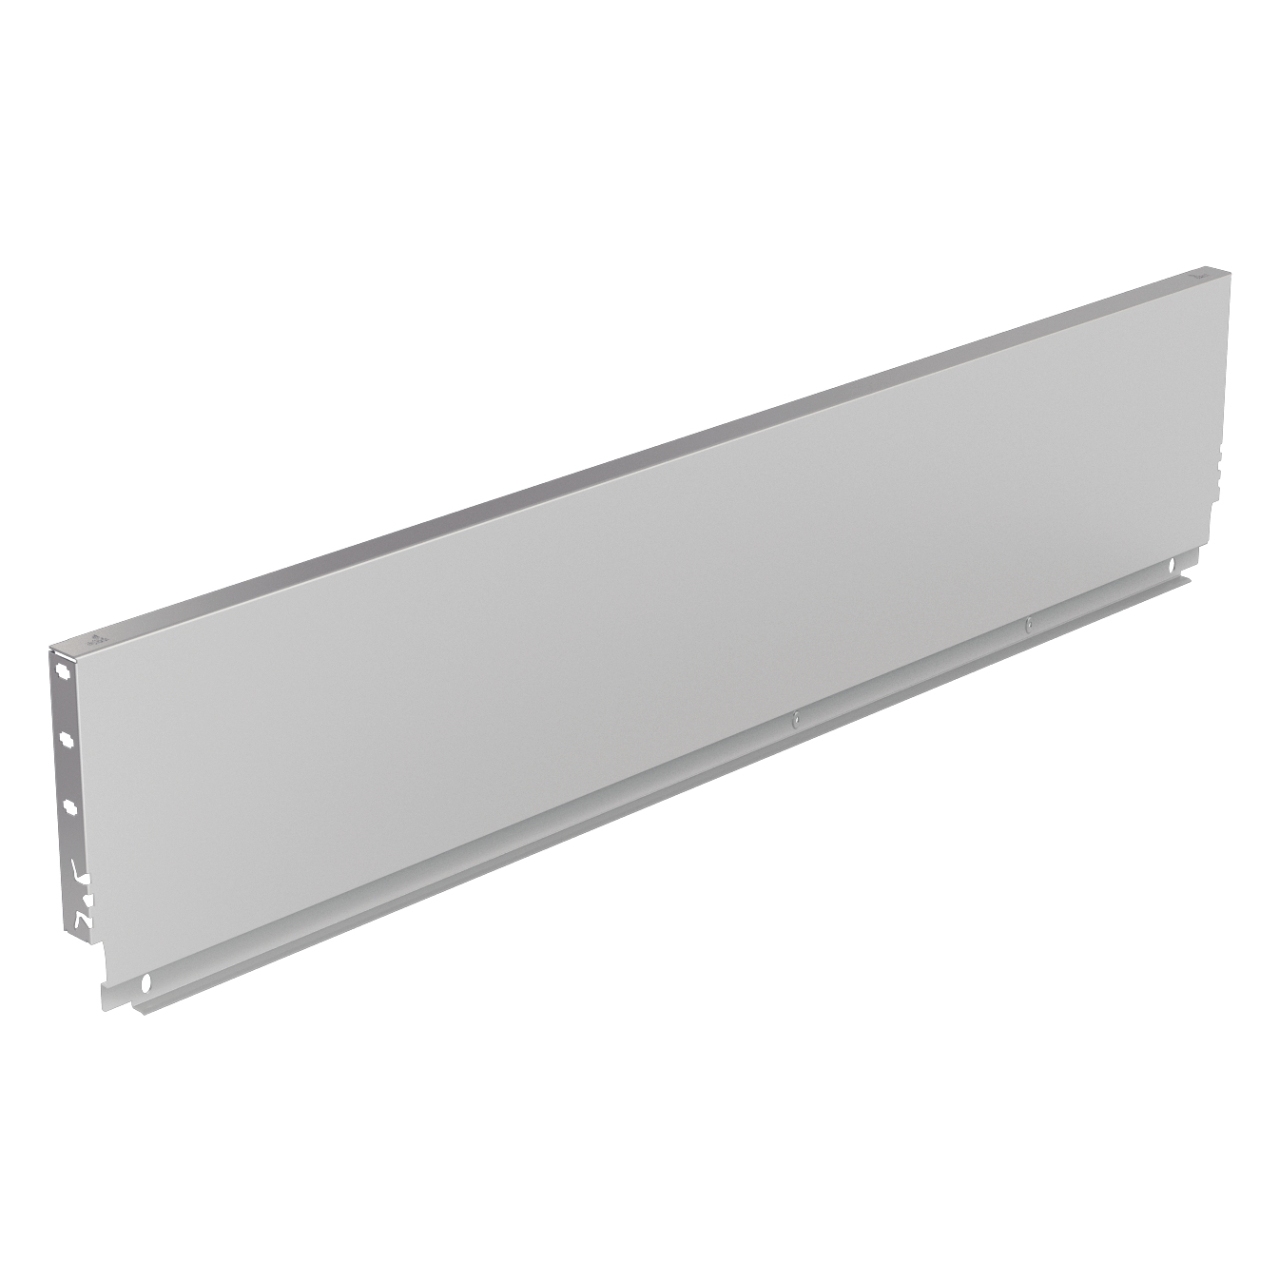 HETTICH Stahlrückwand ArciTech, 250 x 900 mm, weiß, 9121706